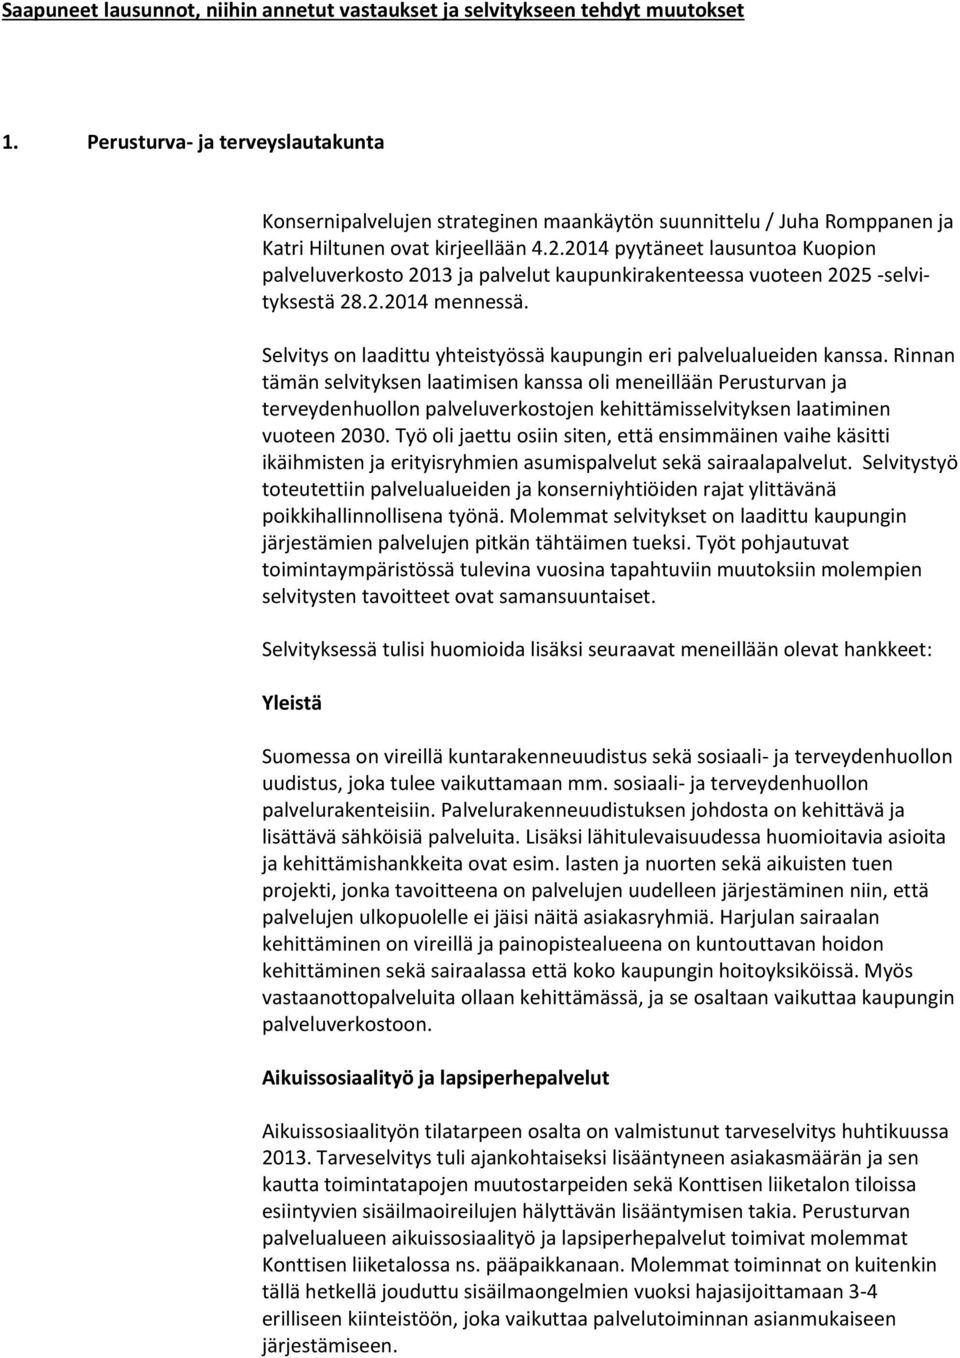 2014 pyytäneet lausuntoa Kuopion palveluverkosto 2013 ja palvelut kaupunkirakenteessa vuoteen 2025 -selvityksestä 28.2.2014 mennessä.